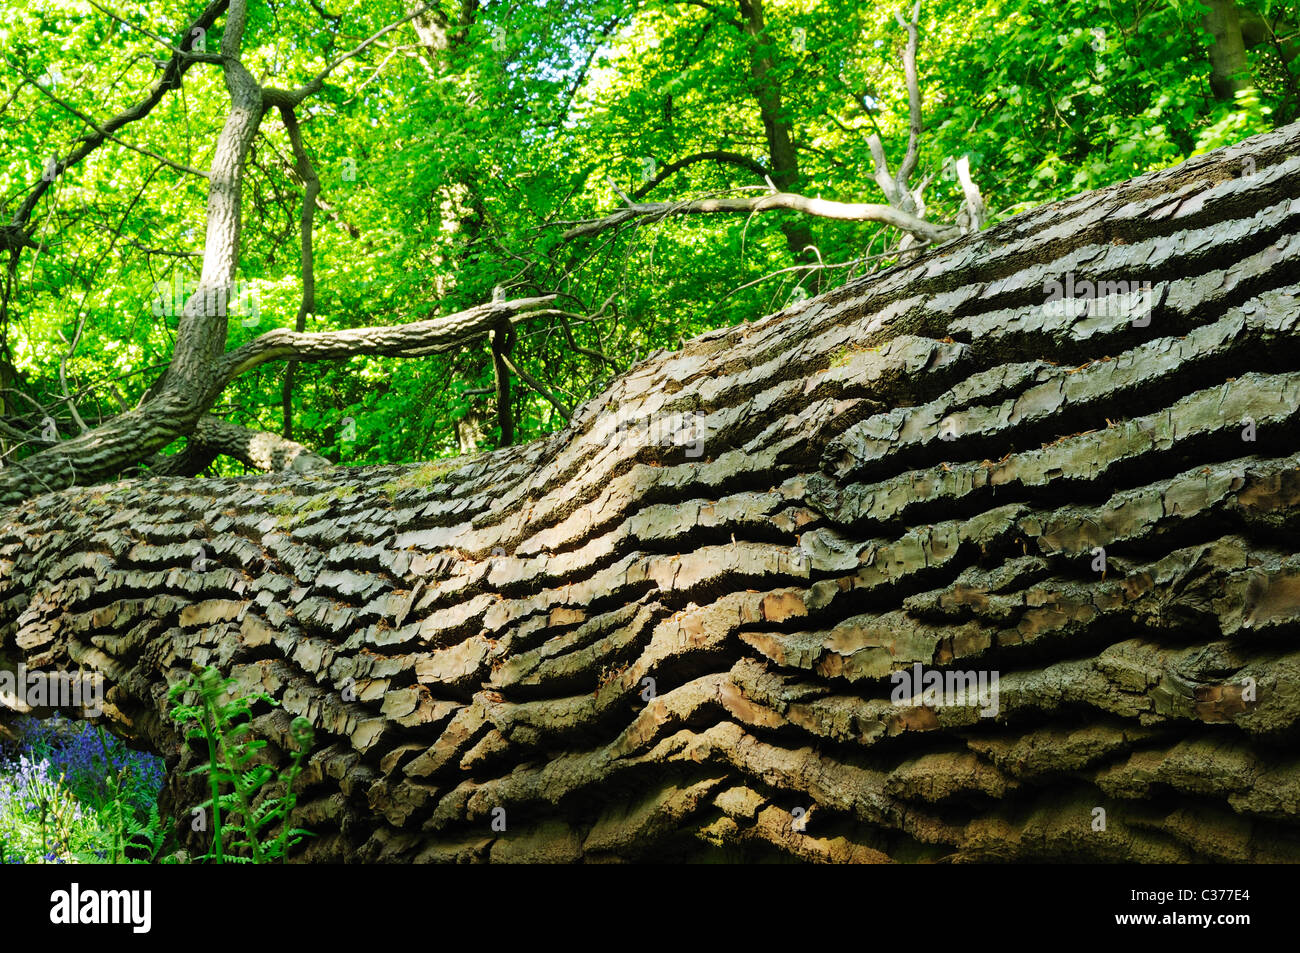 Fallen Oak In English Deciduous Woodland. Stock Photo